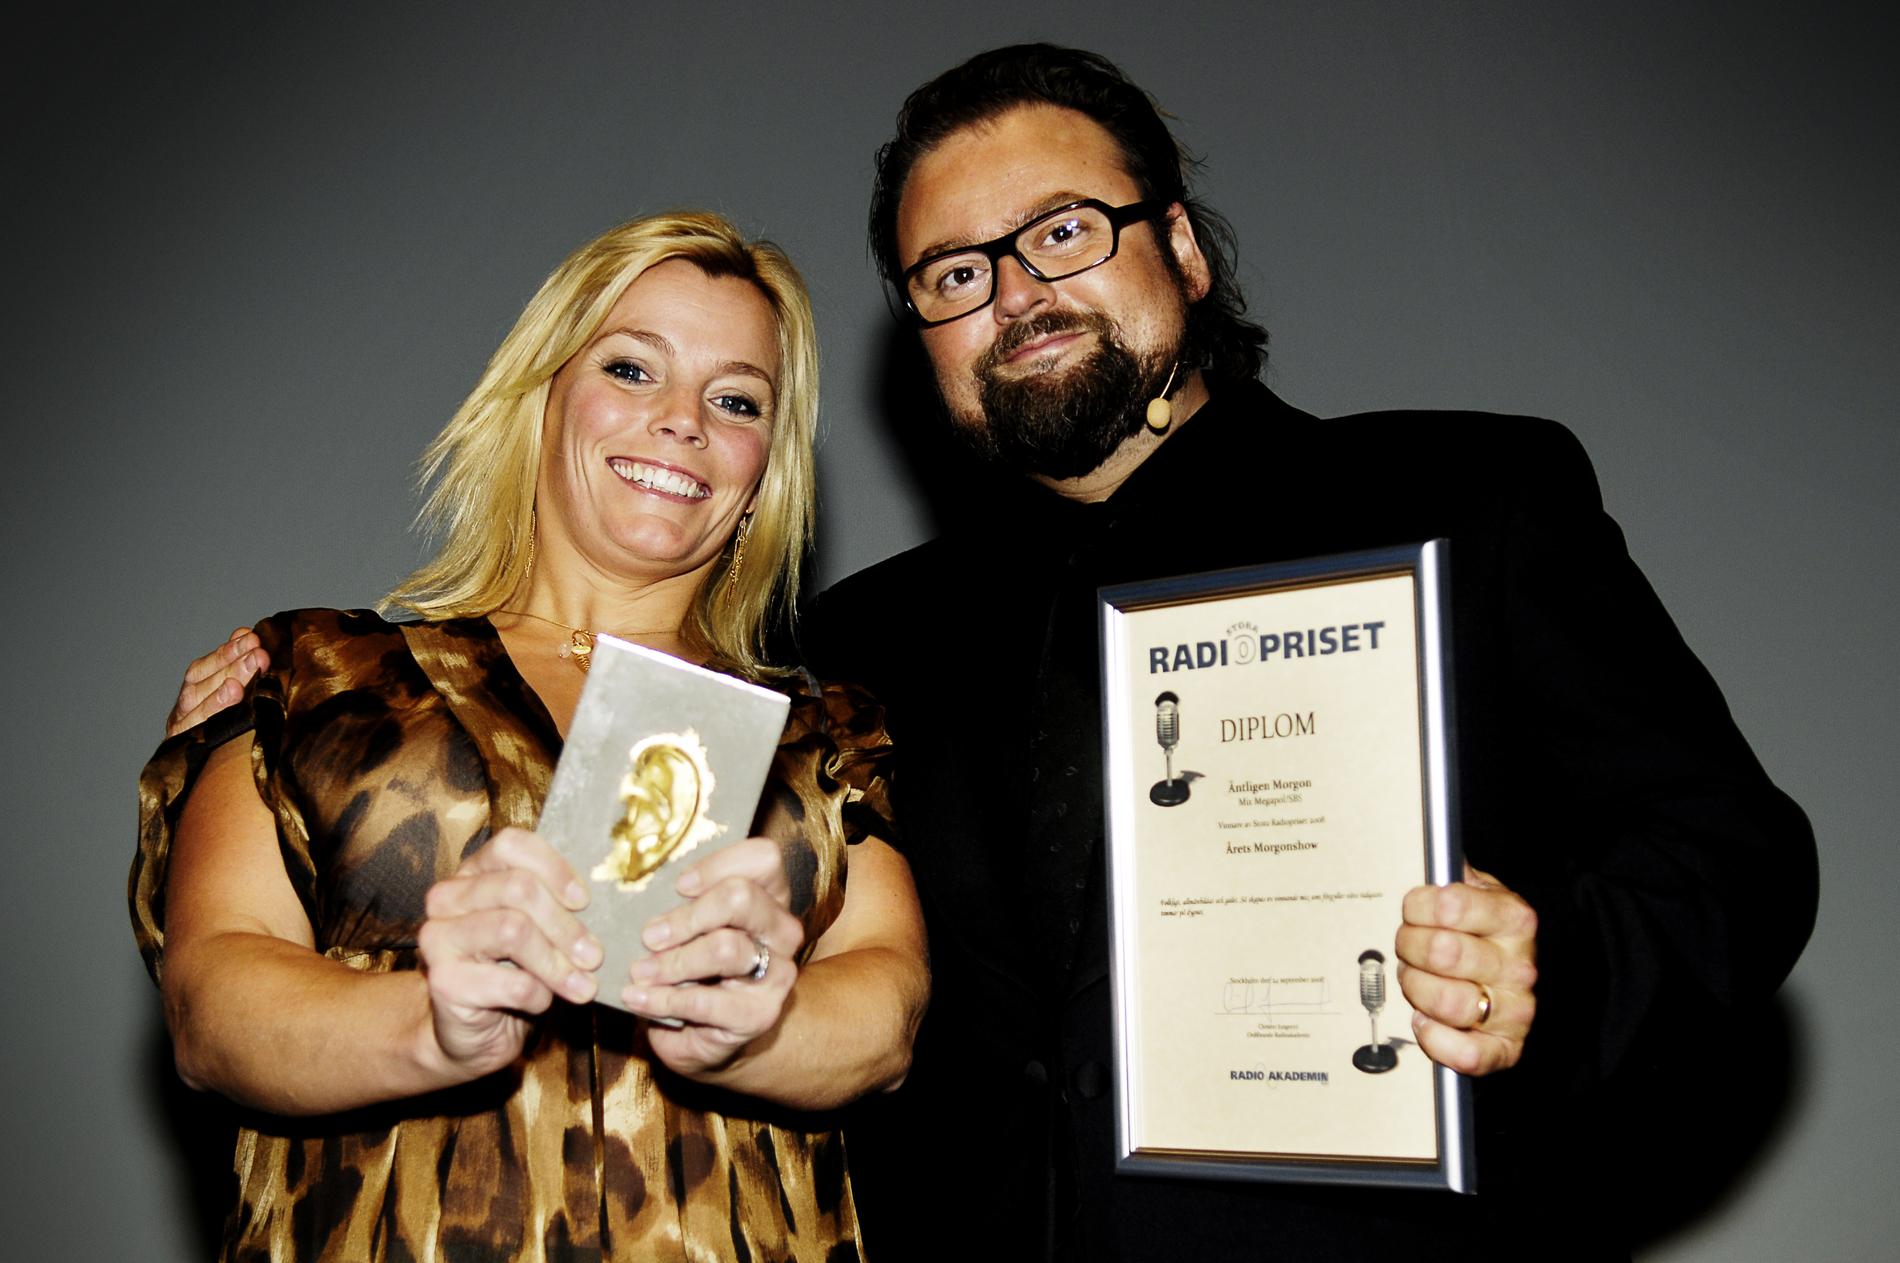 2008 vann Adam Alsing och Gry Forssell pris på Radiogalan för sitt program ”Äntligen morgon”.